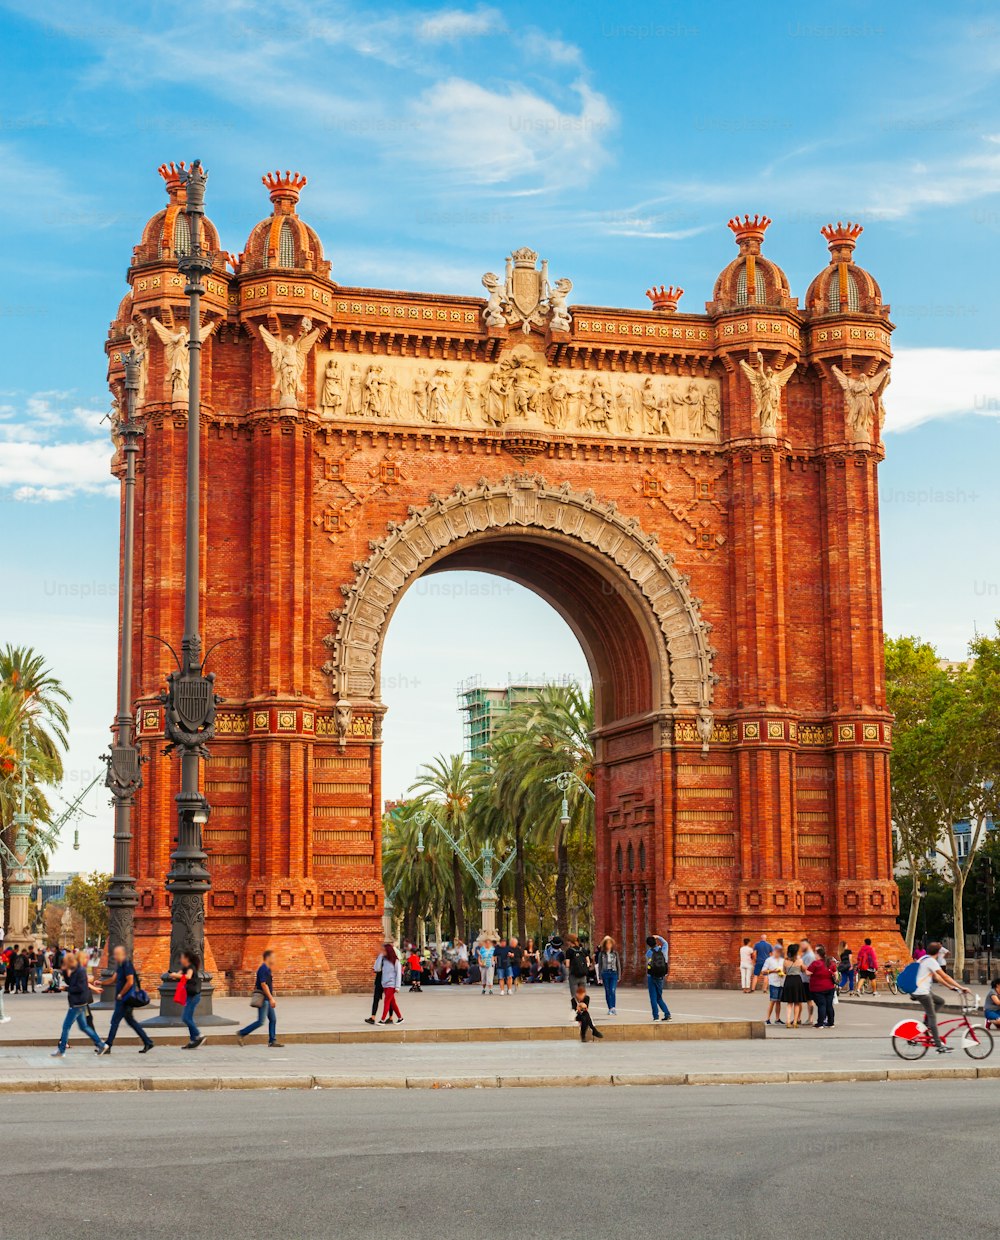 개선문 (Arc de Triomf) 또는 개선문 (Arco de Triunfo) 은 스페인 카탈루냐 지역 바르셀로나에 있는 개선문이다